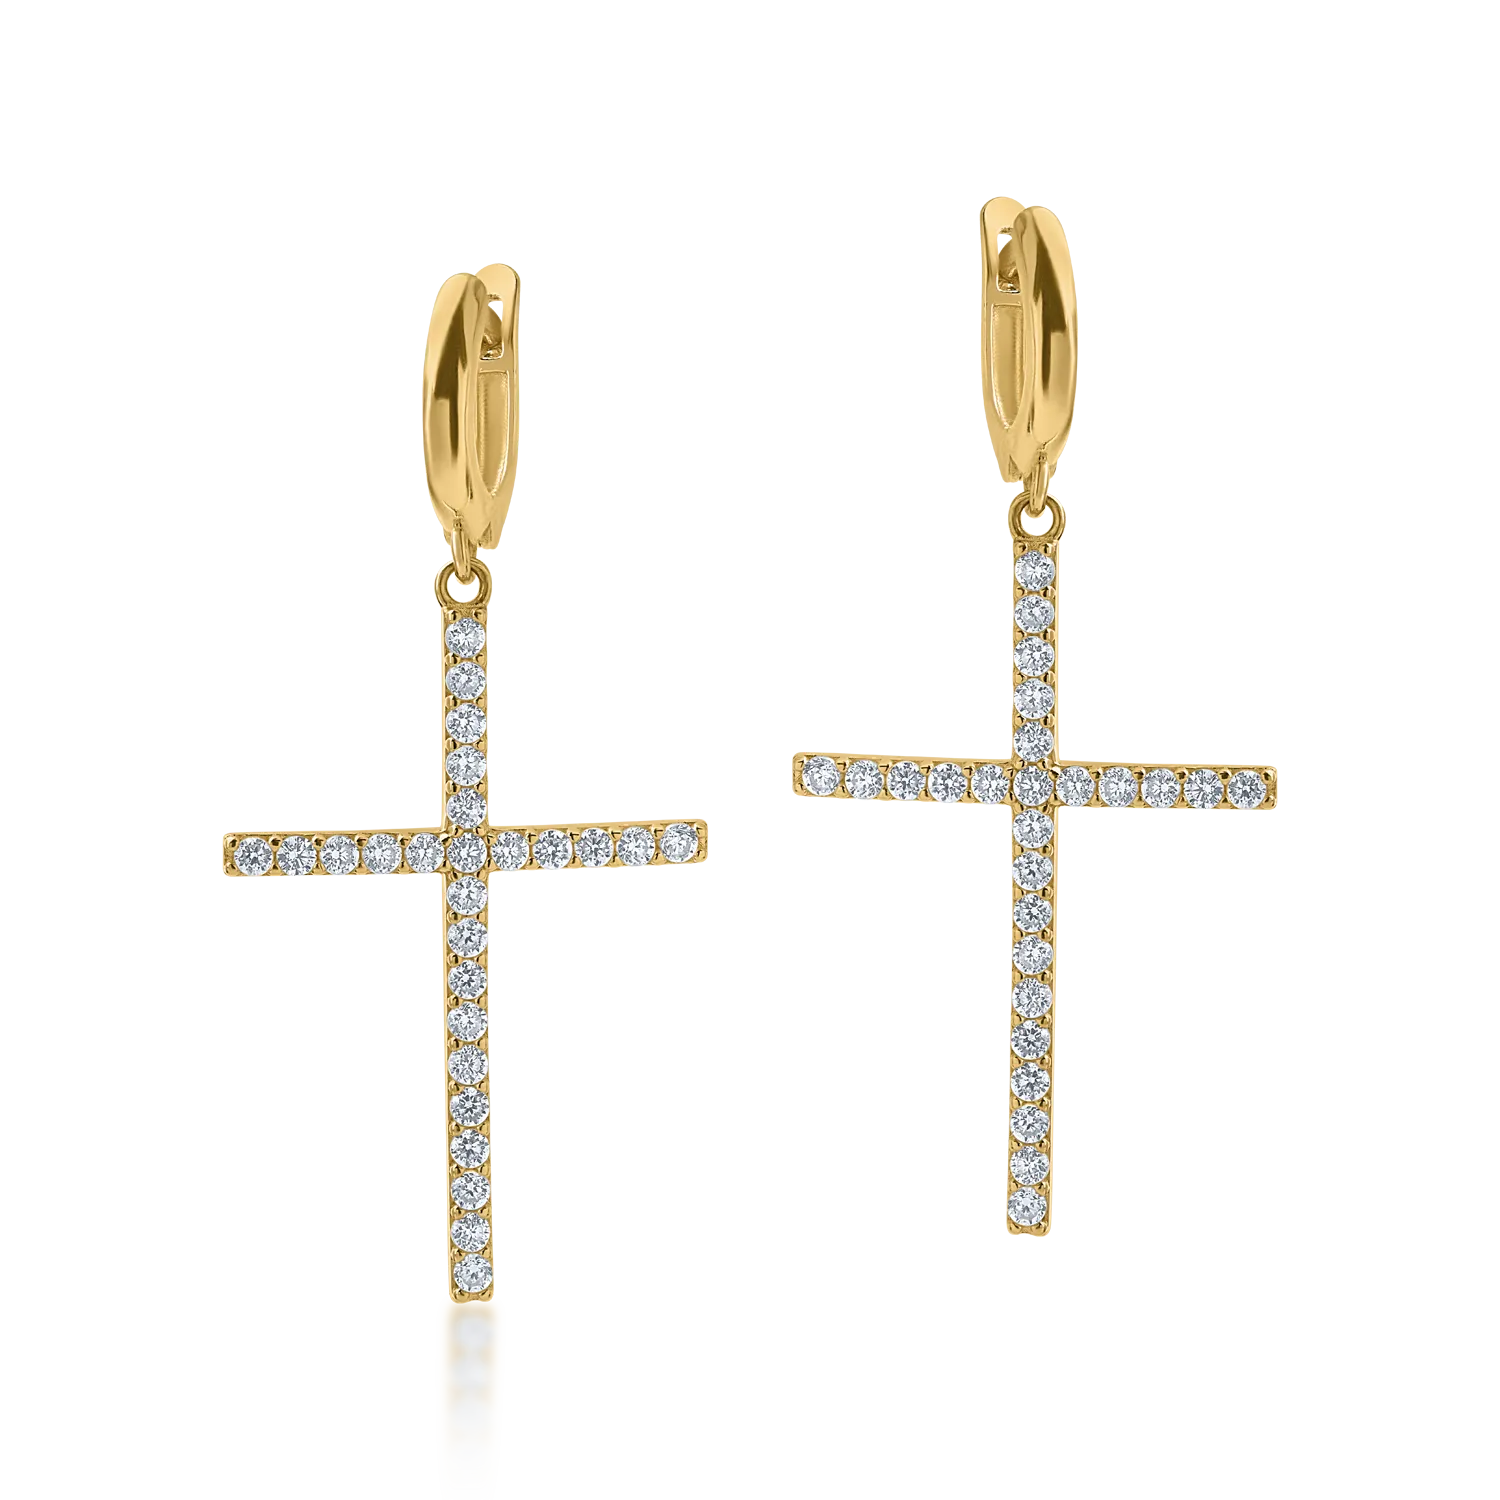 Yellow gold cross earrings